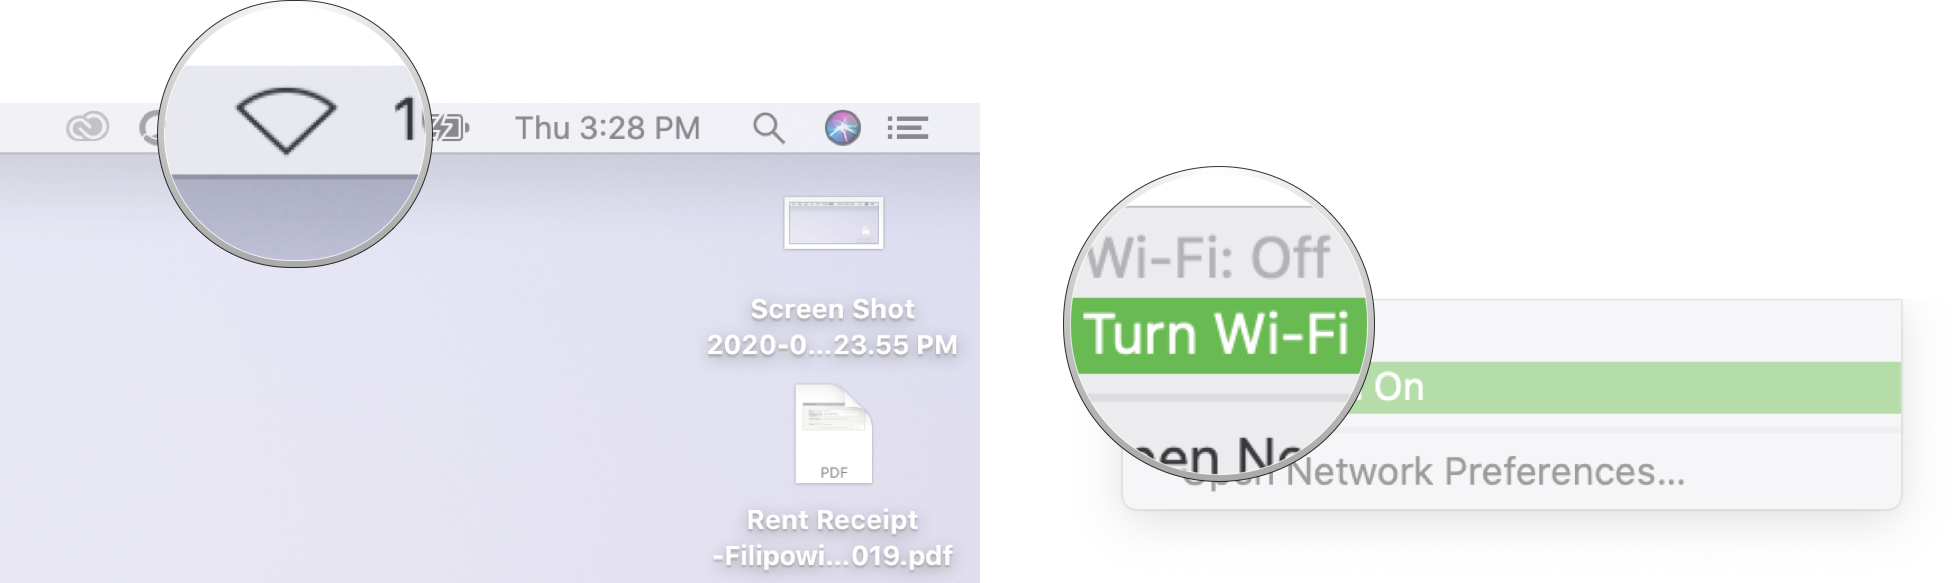 Turn on Wi-Fi on Mac: Click the Wi-Fi symbol in the Menubar and then click turn Wi-Fi on